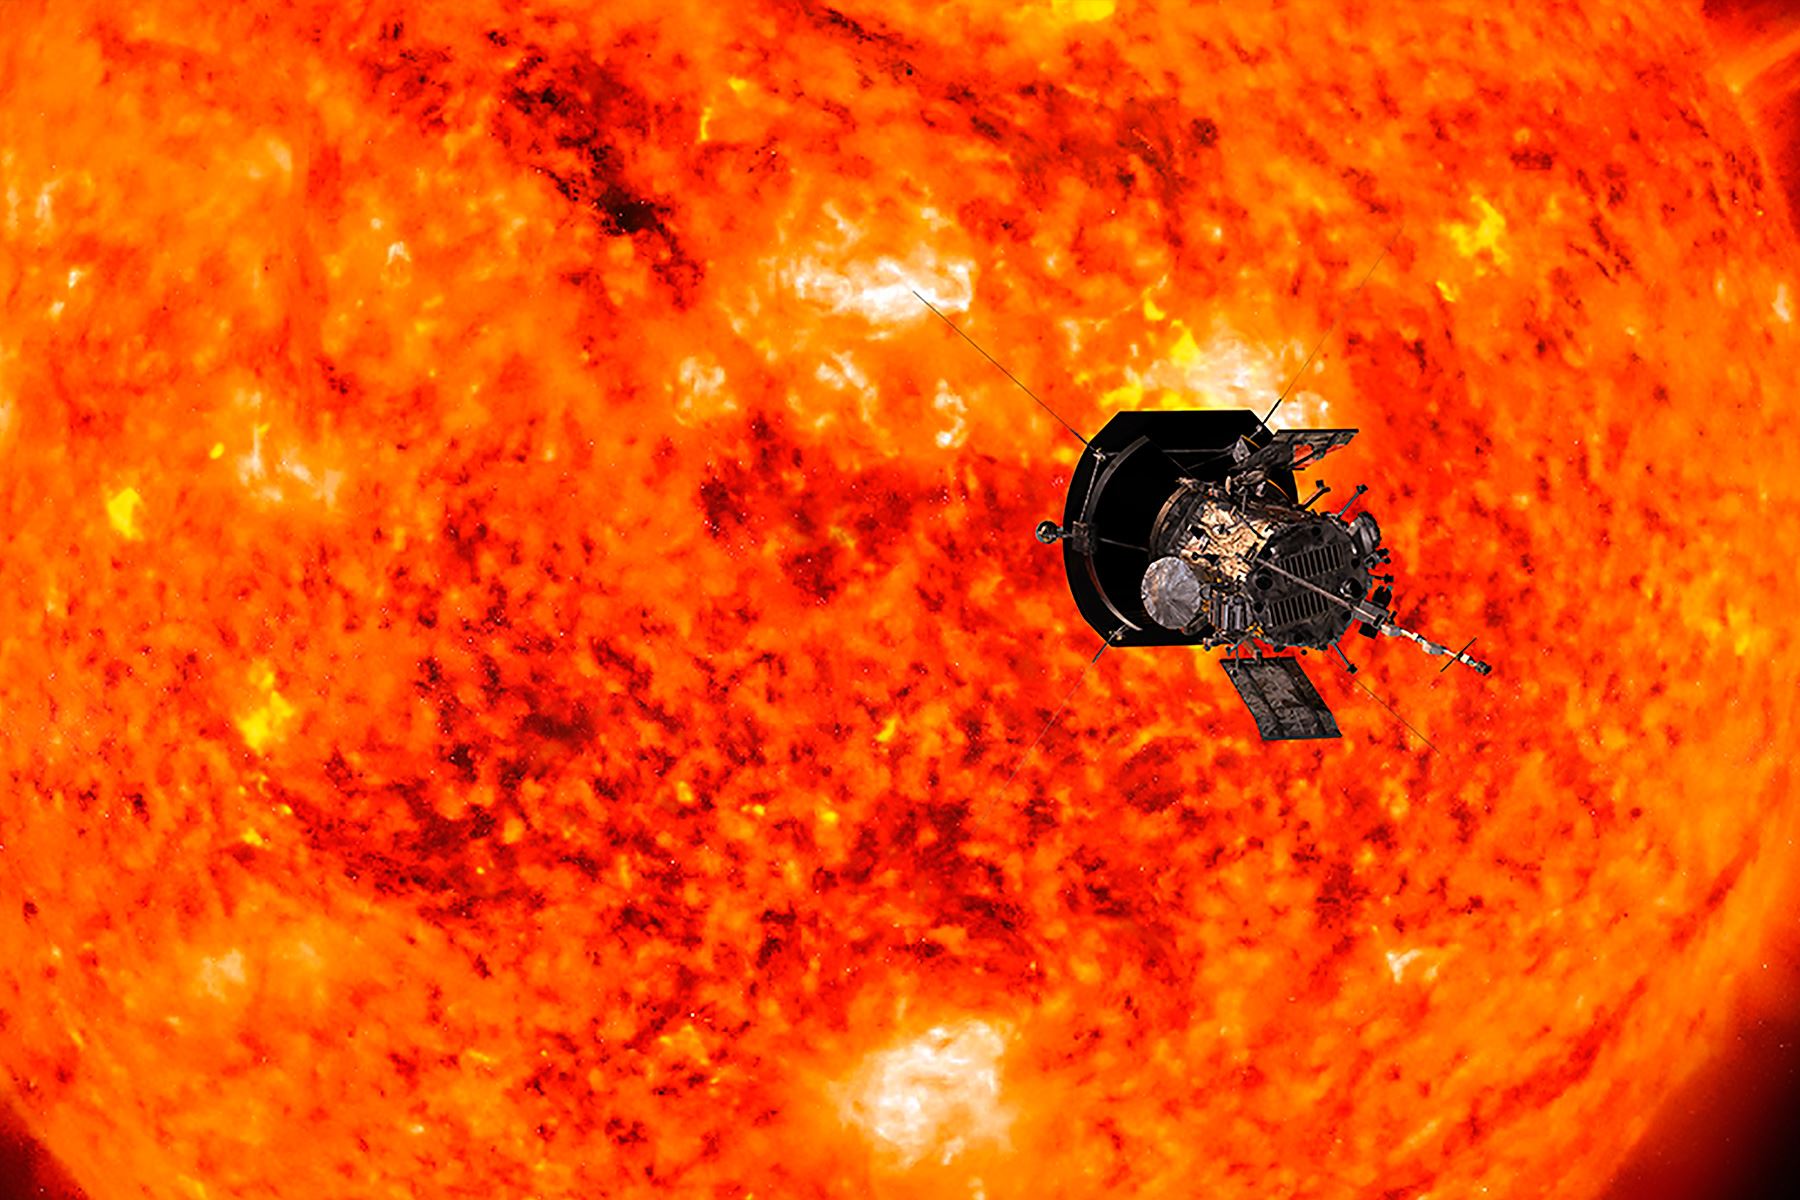 El Solar Orbiter, misión de colaboración especial entre la ESA (Agencia Espacial Europea) y la NASA, estudiará de cerca los polos solares. Foto: AFP/NASA/Jhons Hopkins APL